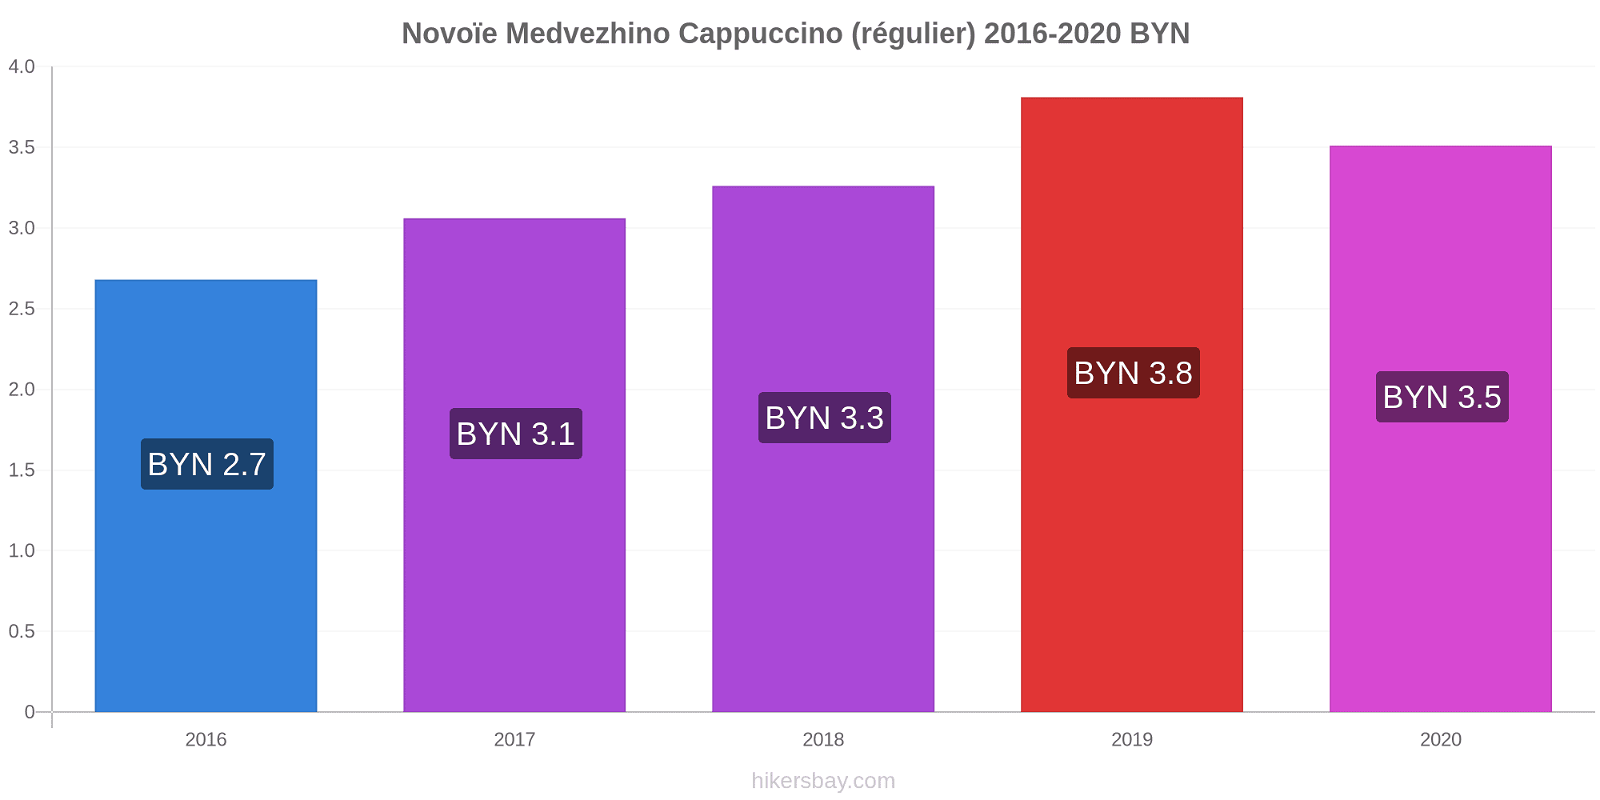 Novoïe Medvezhino changements de prix Cappuccino (régulier) hikersbay.com